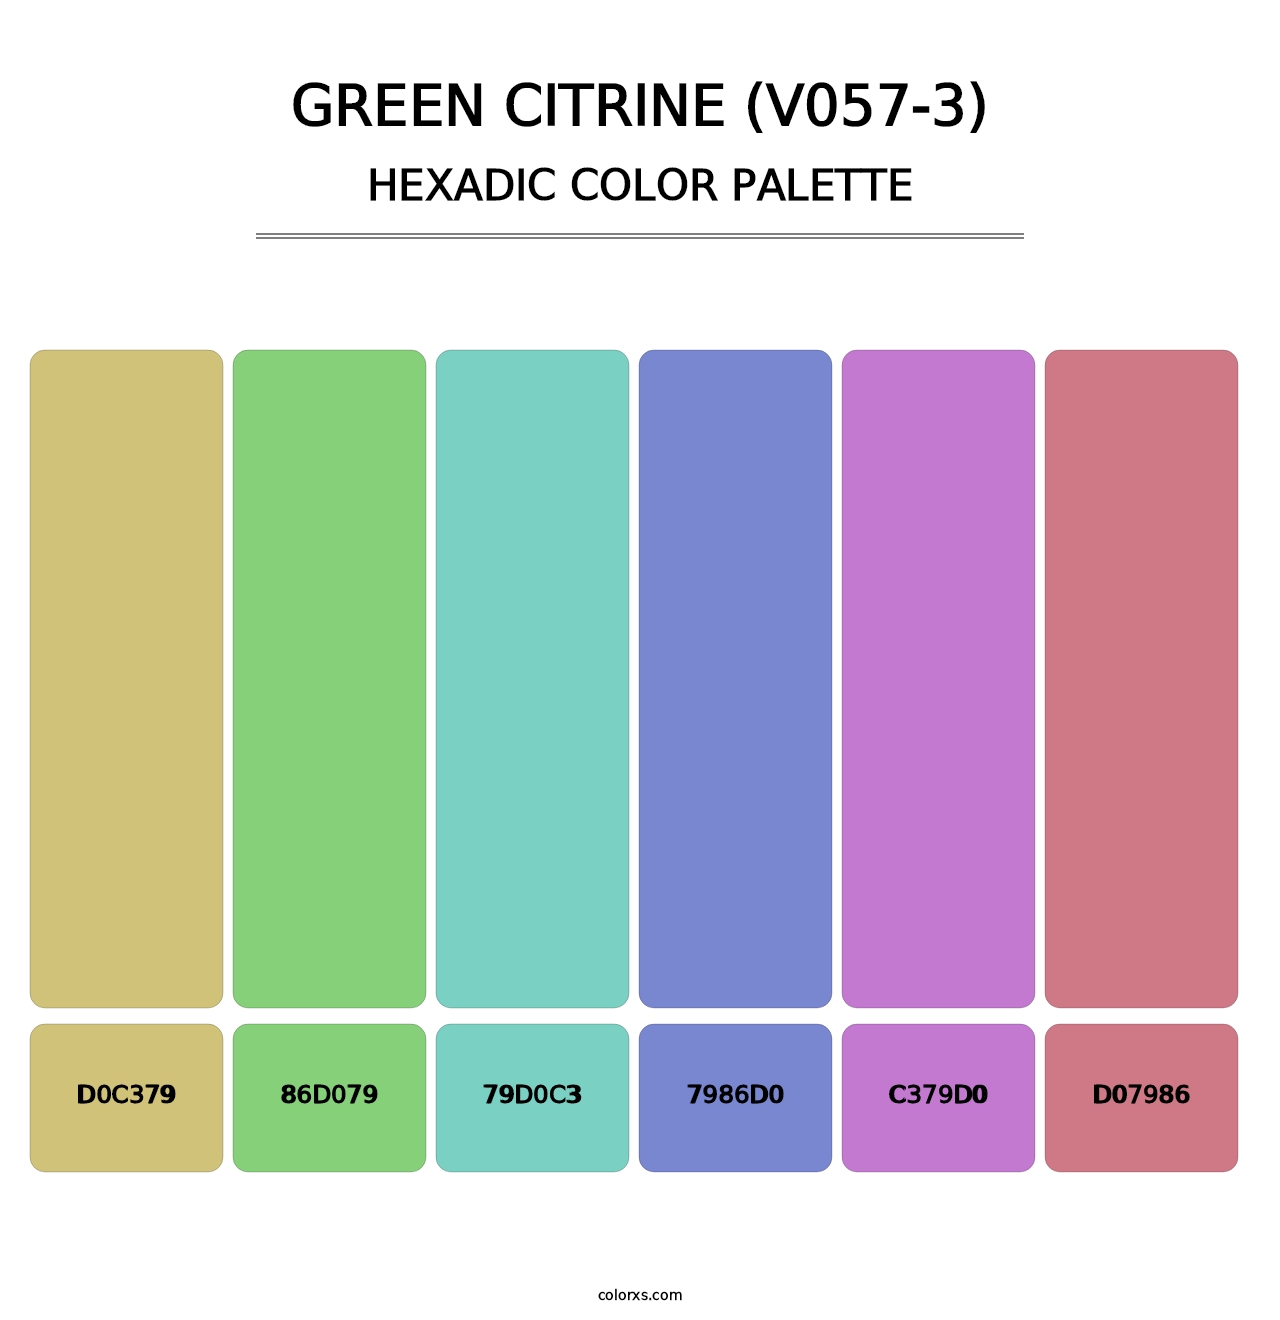 Green Citrine (V057-3) - Hexadic Color Palette